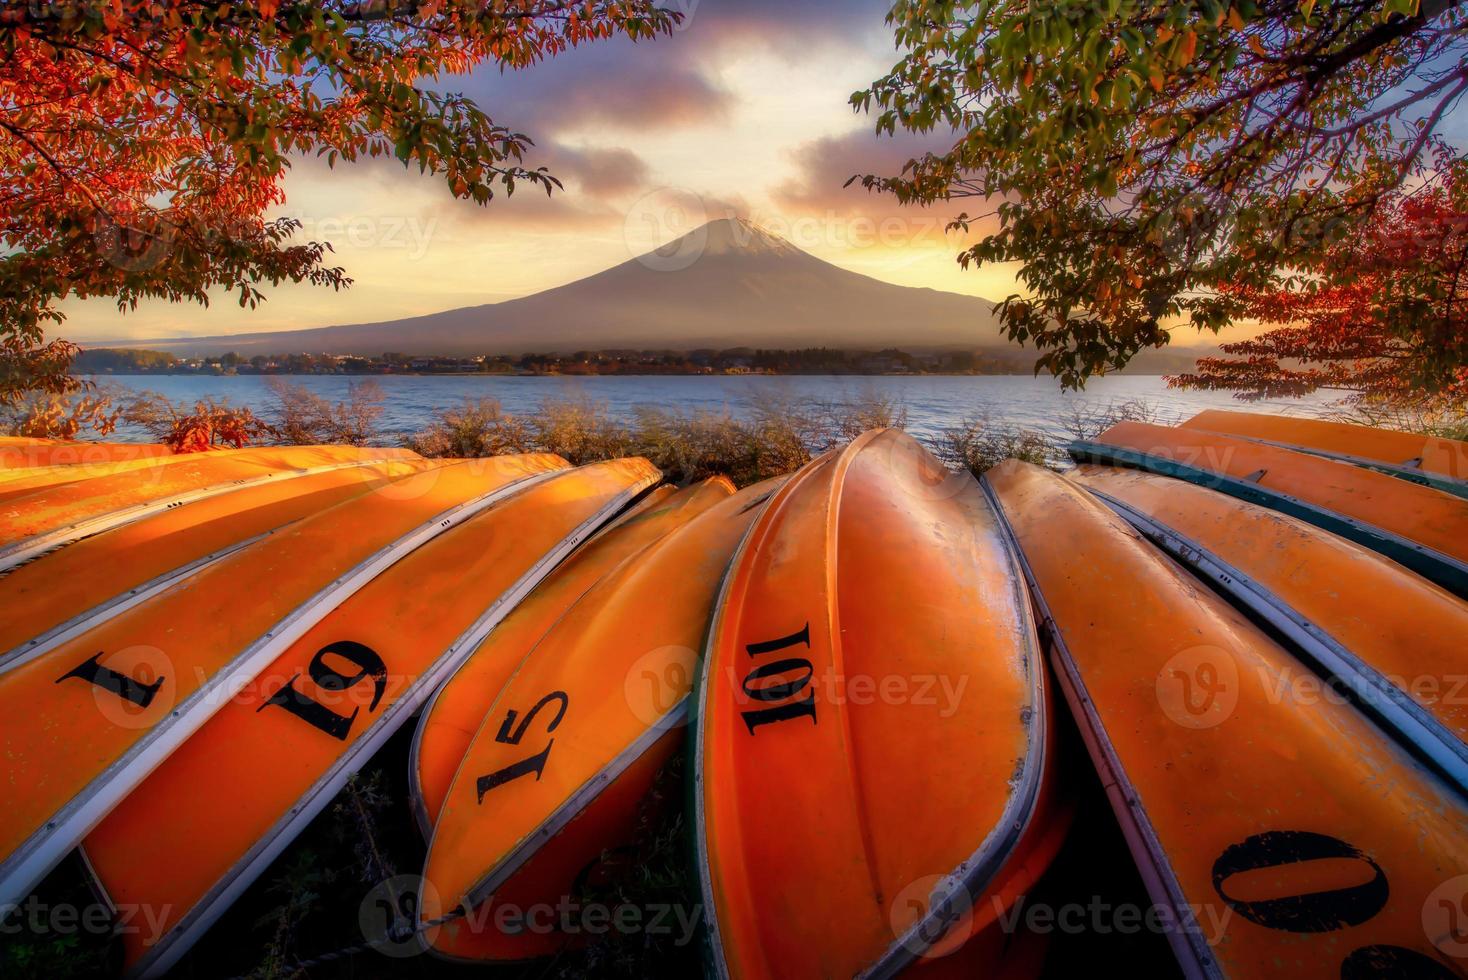 Mt. Fuji over Lake Kawaguchiko with boats at sunset in Fujikawaguchiko, Japan. photo